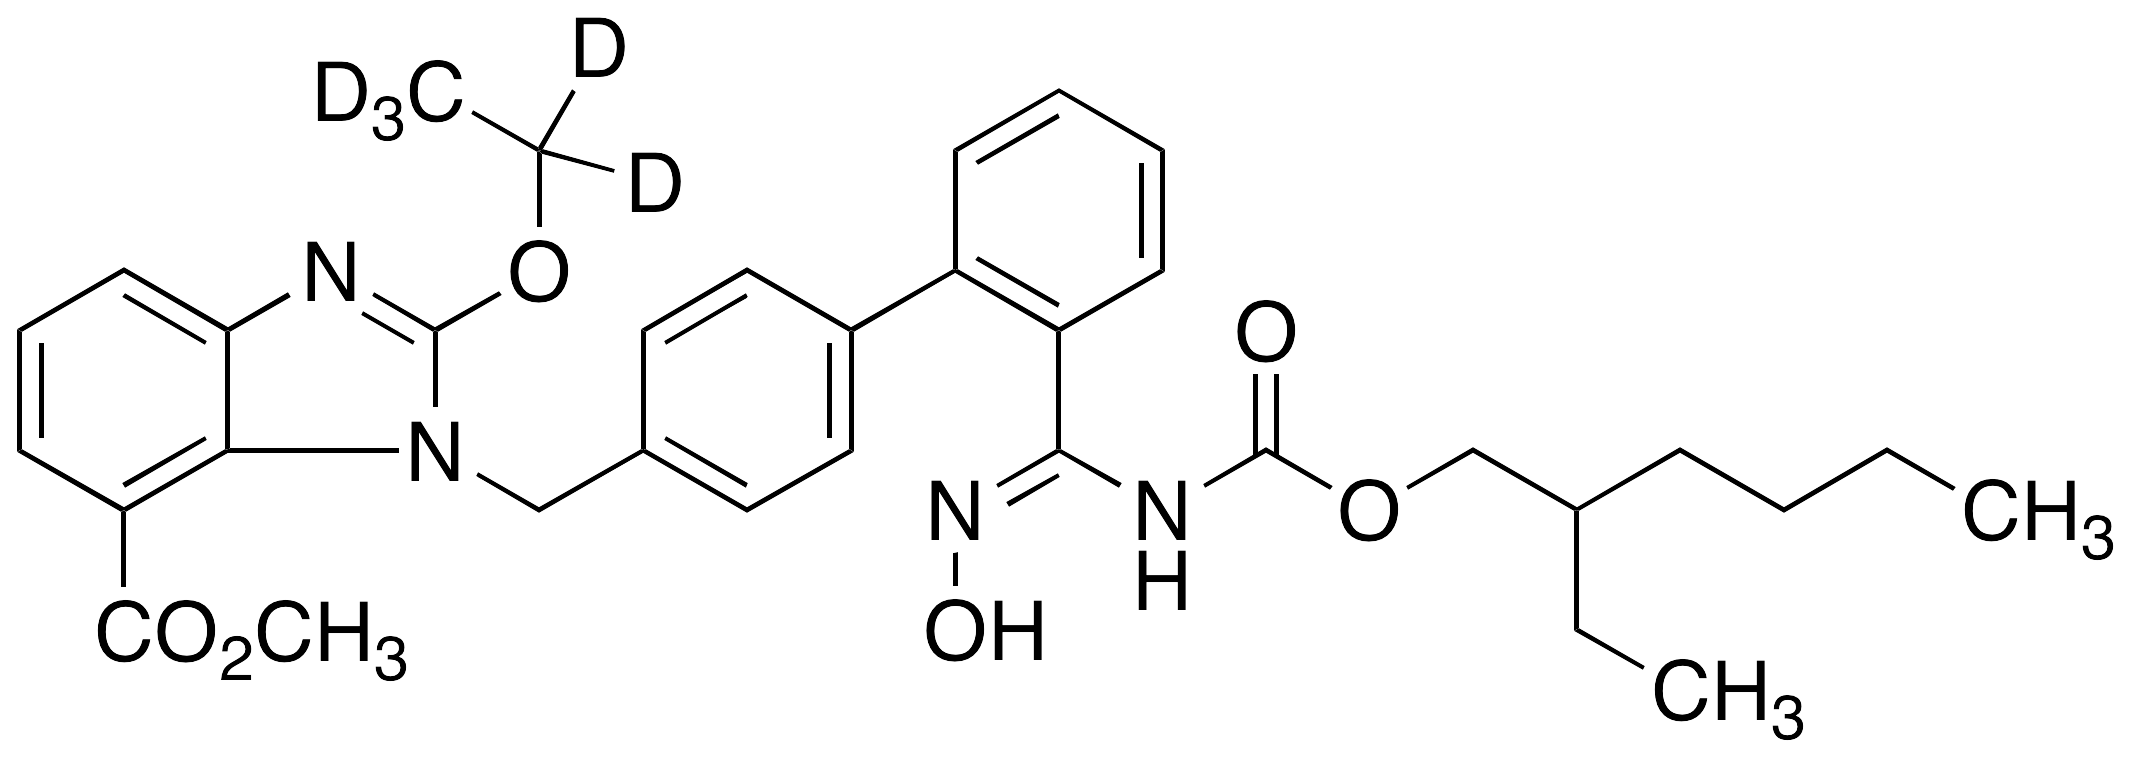 N-[2-Ethoxy-d5-1-[[2'-[(hydroxyamino)methyl][1,1'-biphenyl]-4-yl]methyl]-1H-benzimidazole-7-carboxylic Acid Methyl Ester]carbamic Acid 2-Ethylhexyl Ester